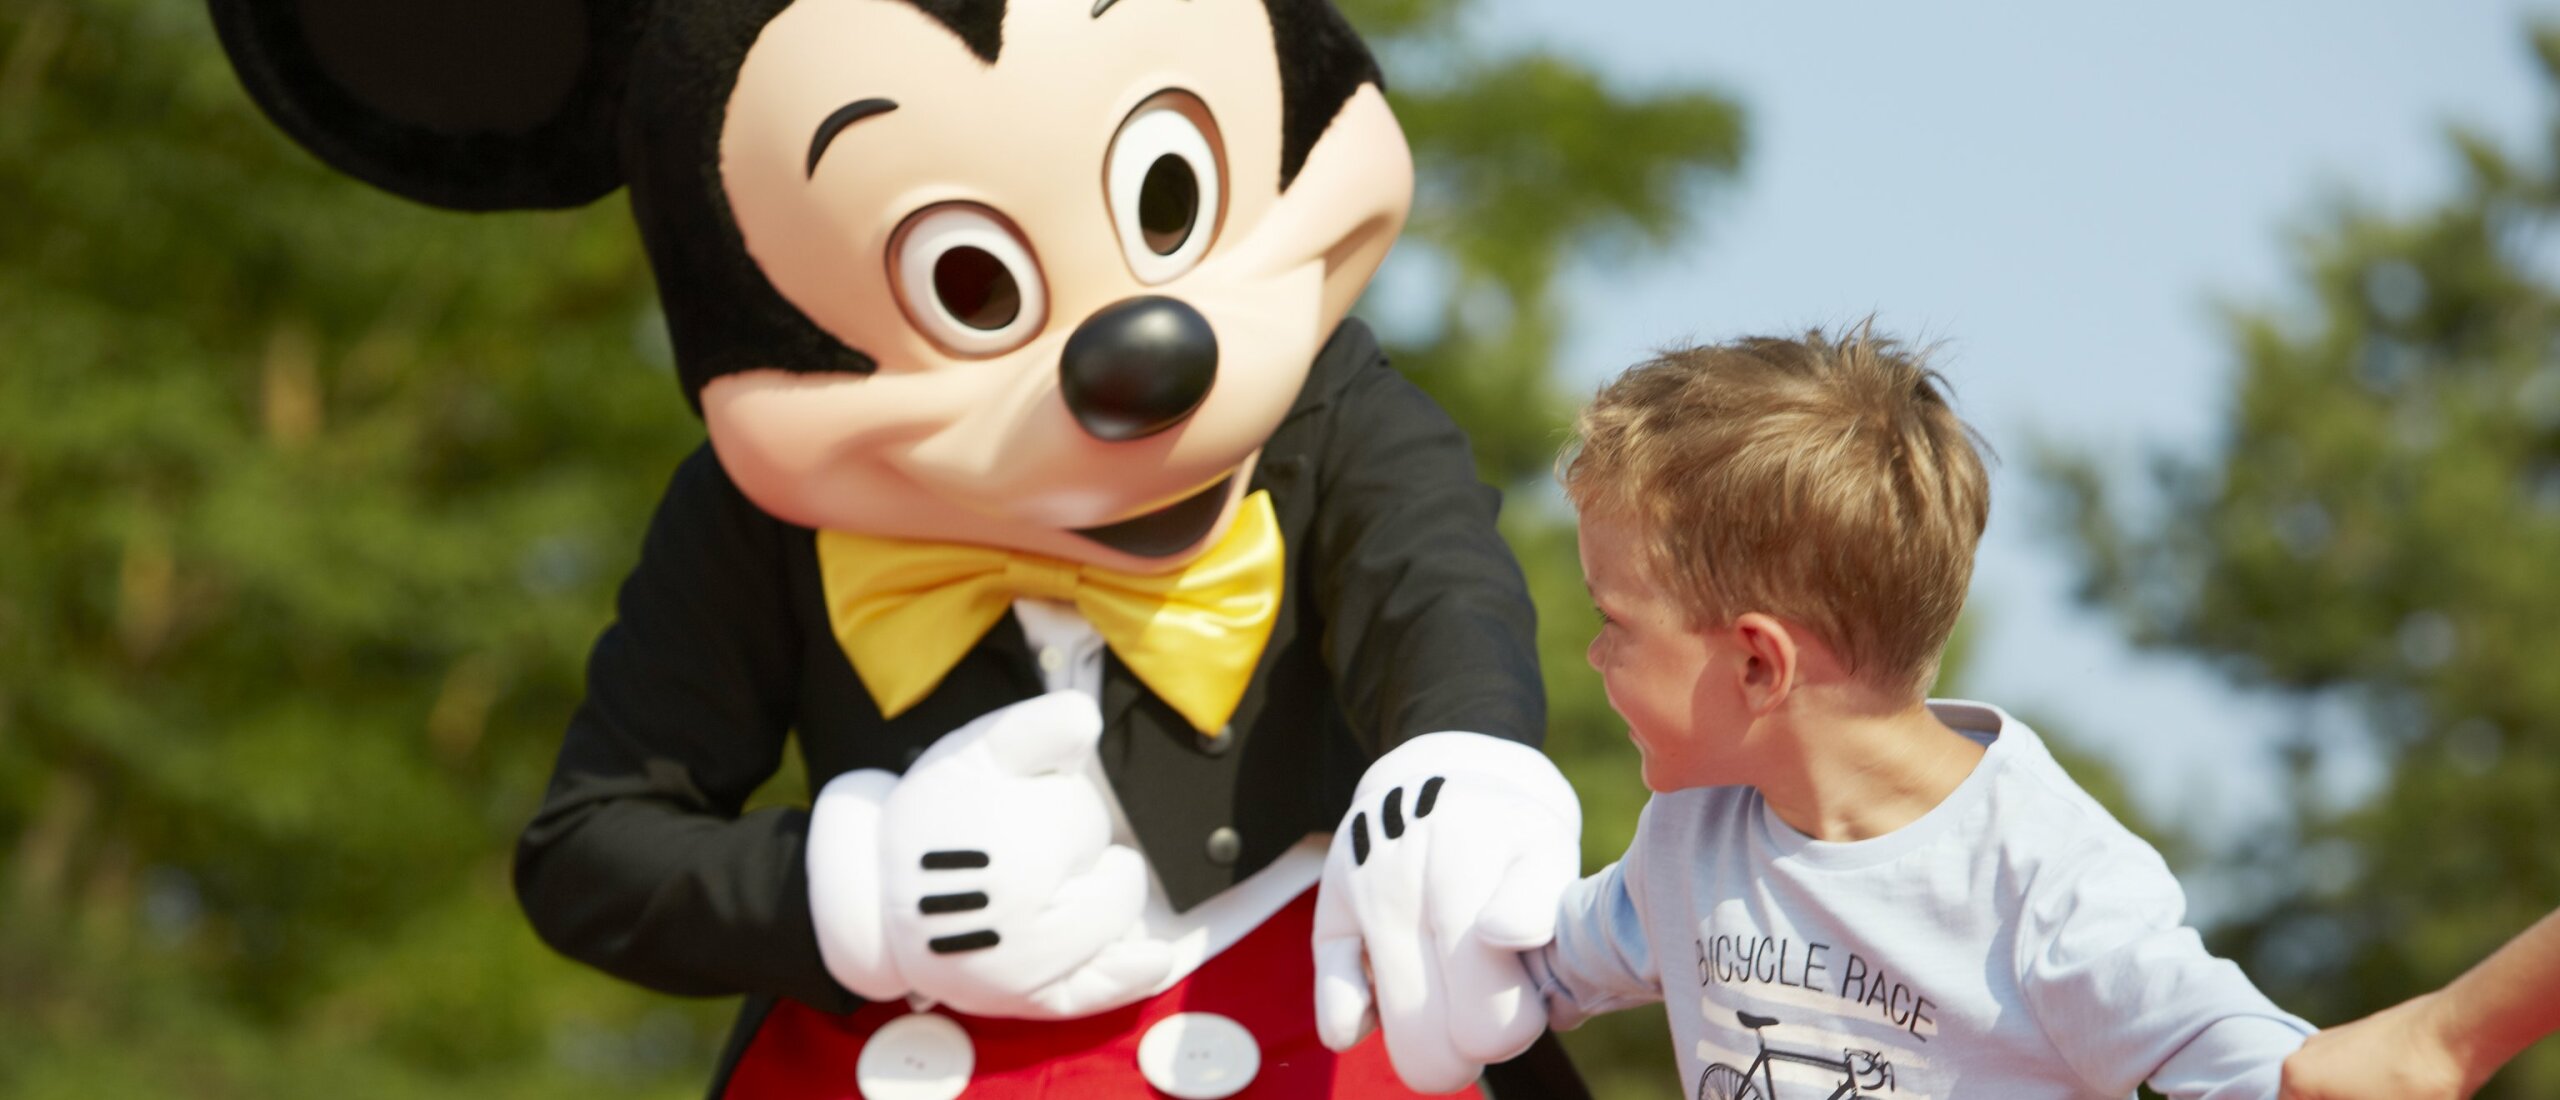 Monopoly Voldoen Gevoel van schuld Disneyland met kinderen? Dit zijn tips om te besparen!